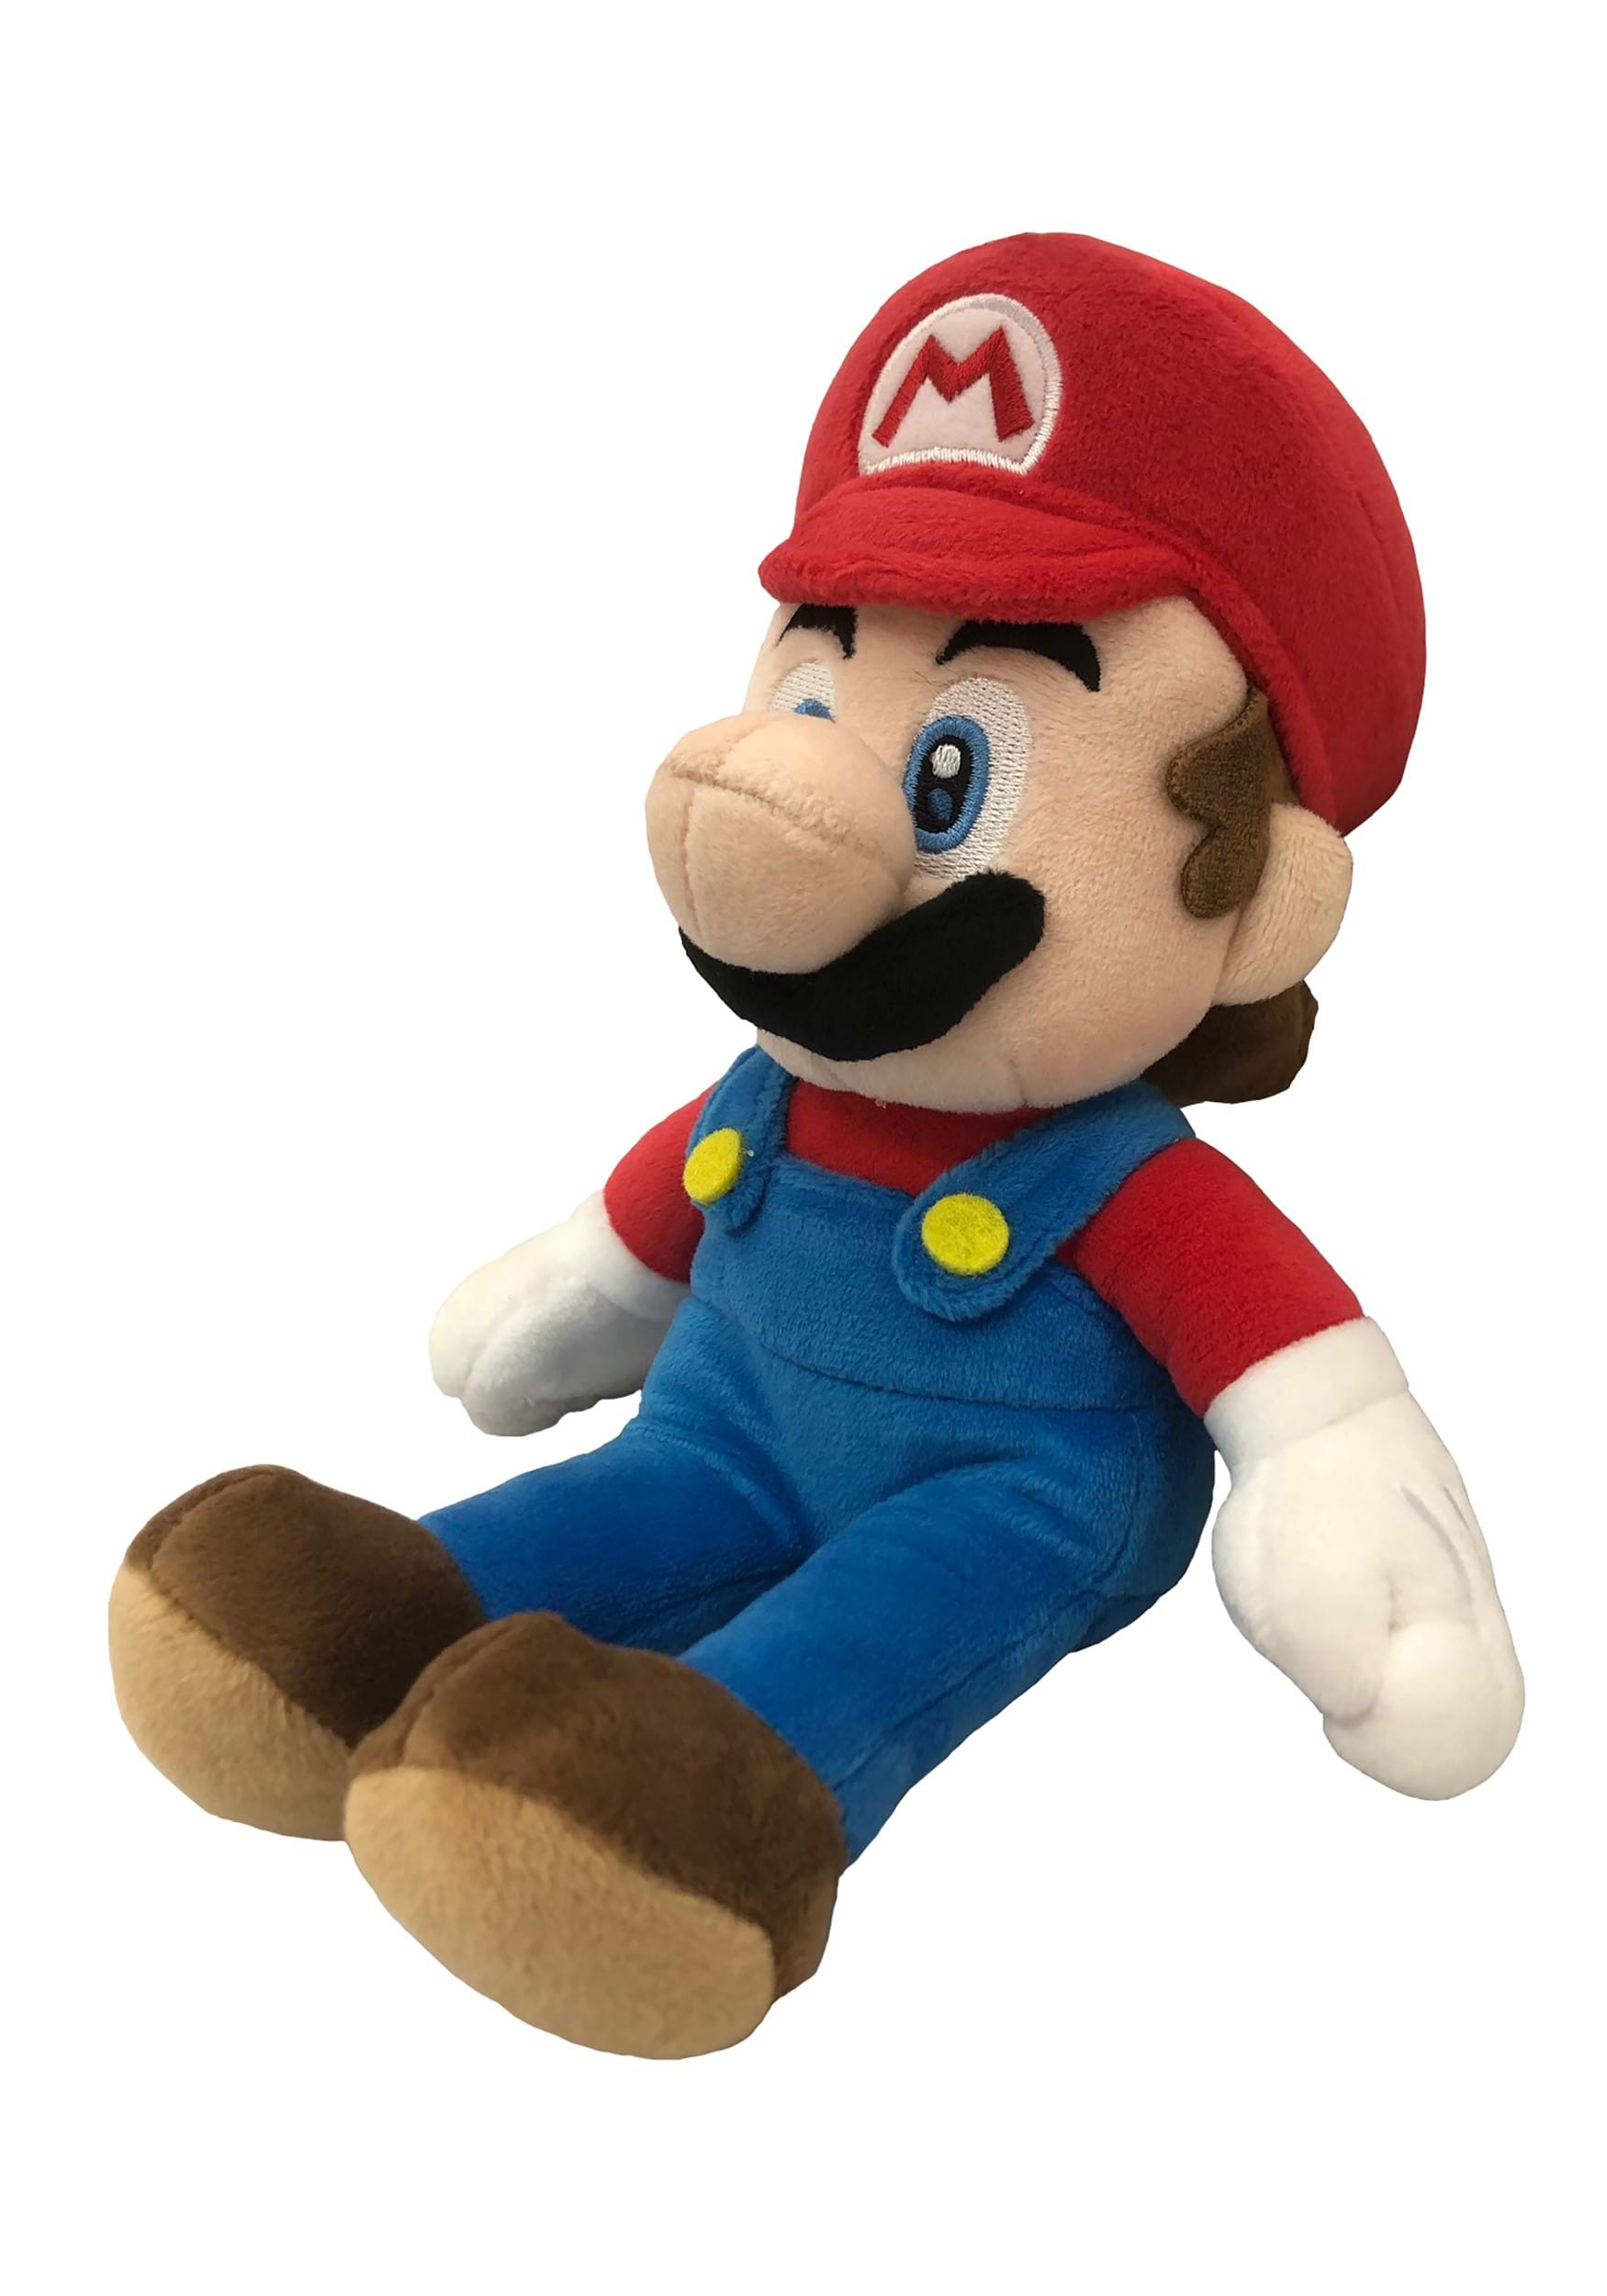 Mario 14" Plush